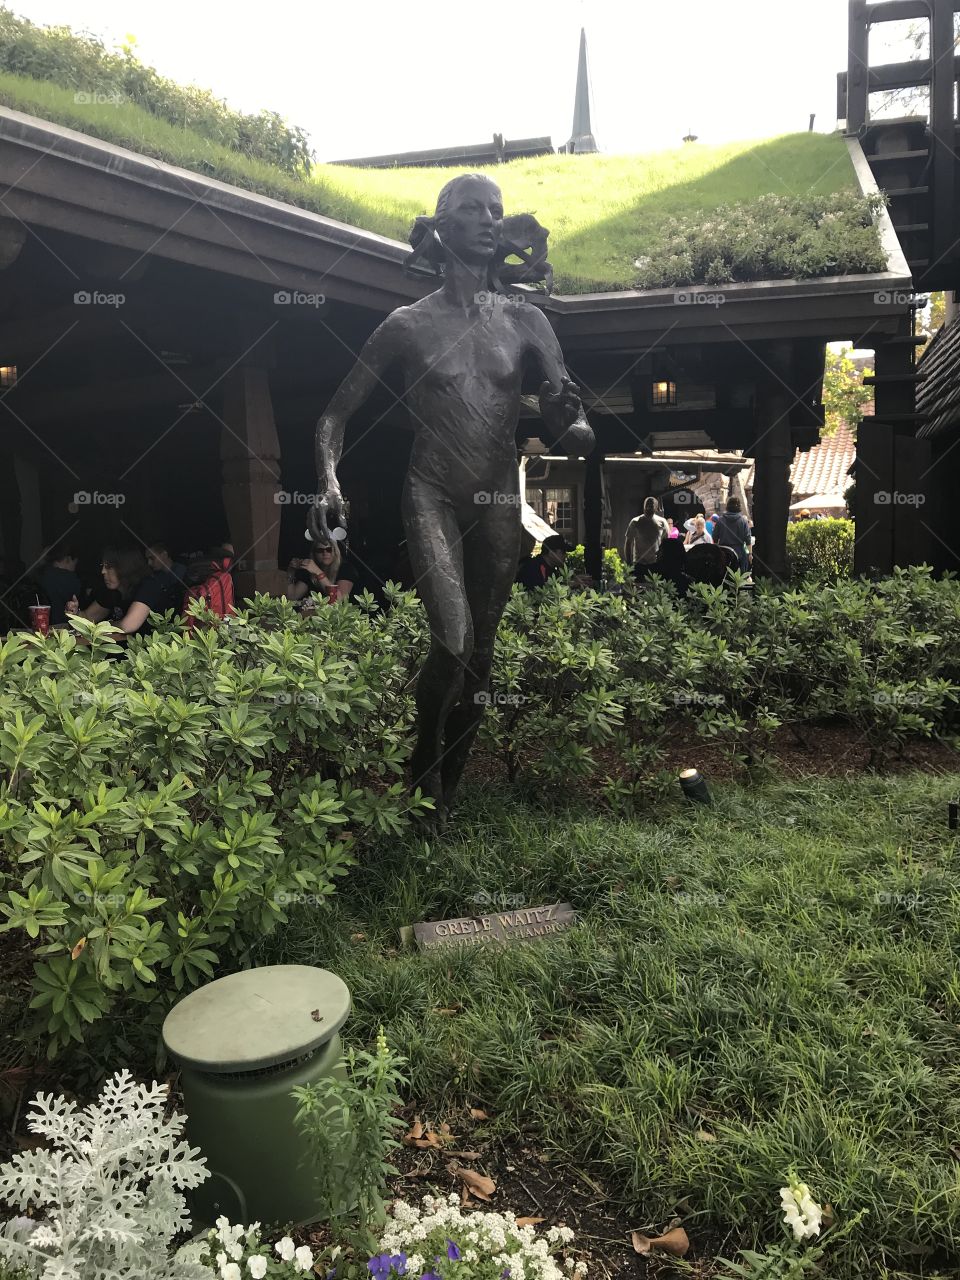 Norway marathoner Grete Waitz statue in Walt Disney World 